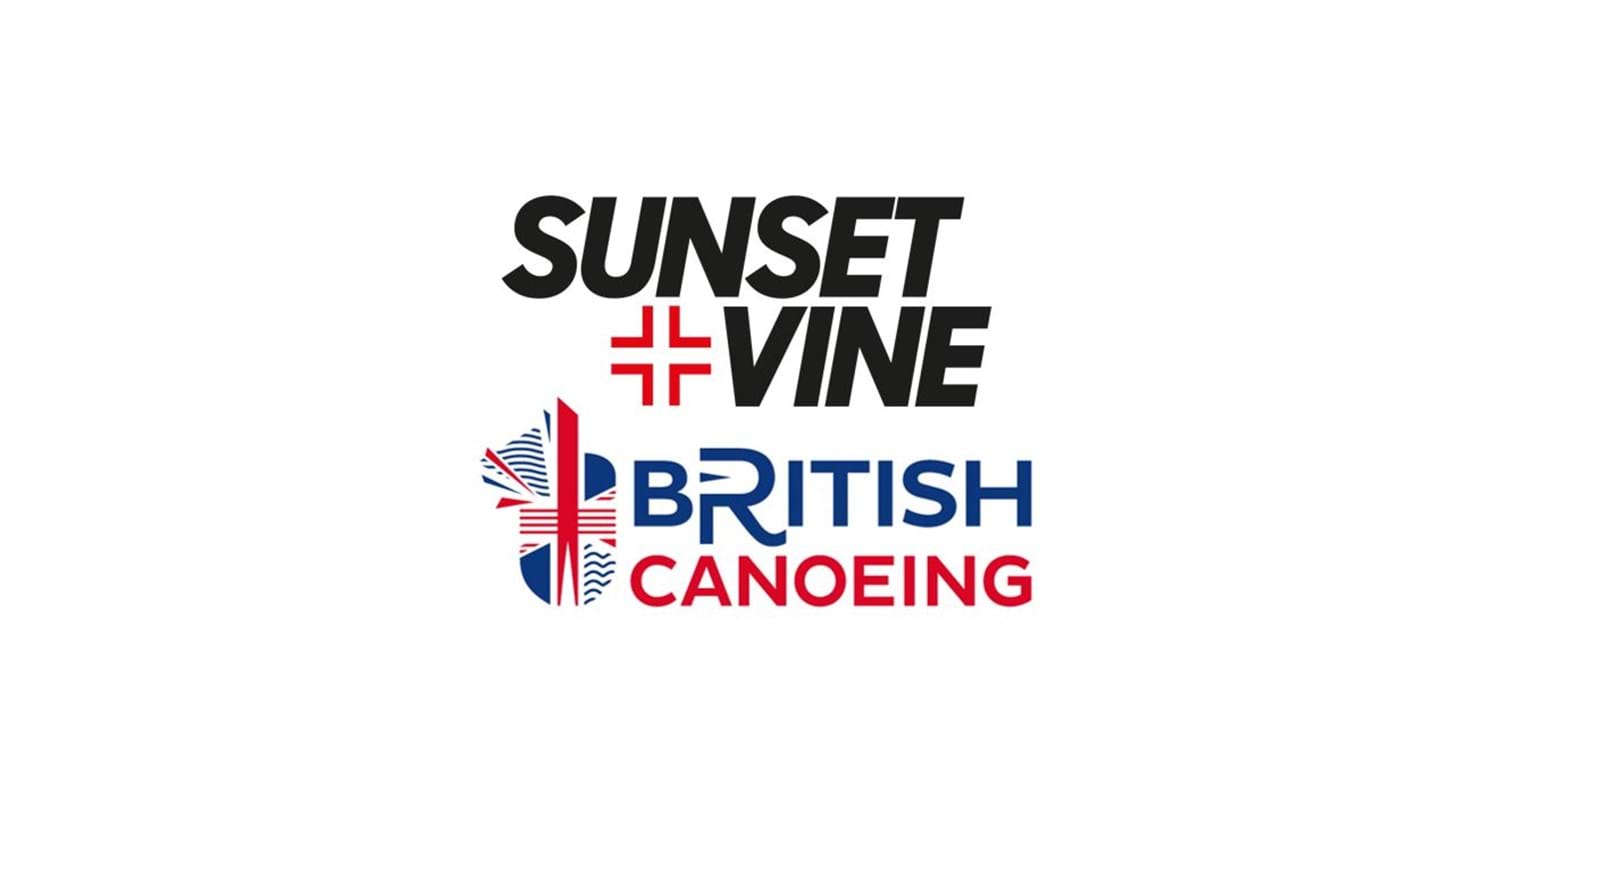 Sunset+Vine named Host Broadcaster for 2023 ICF Canoe Slalom World Championships